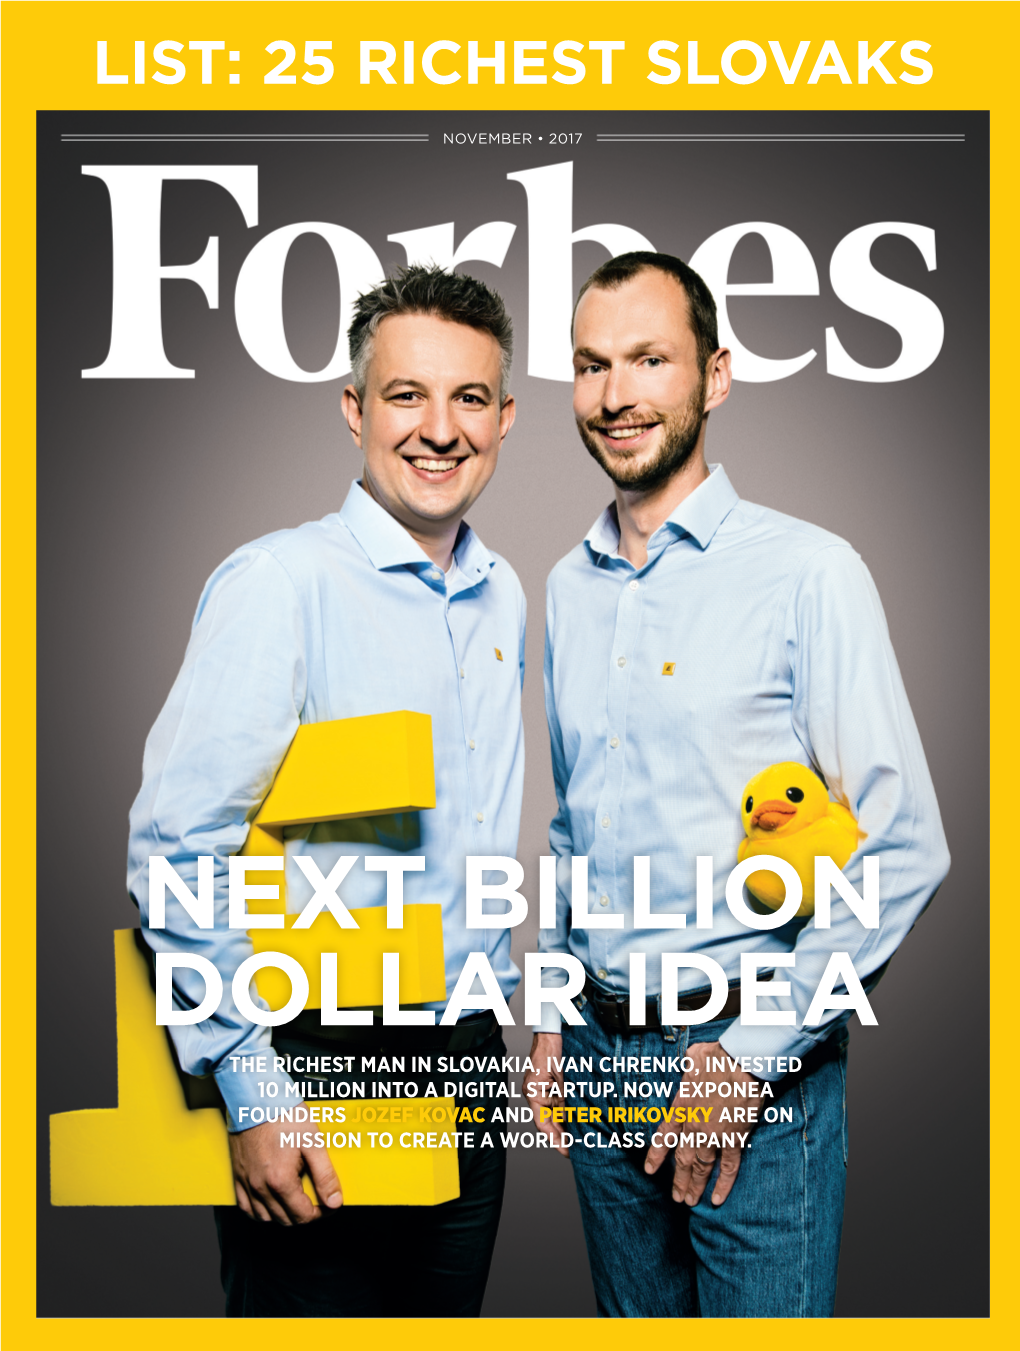 Next Billion Dollar Idea the Richest Man in Slovakia, Ivan Chrenko, Invested 10 Million Into a Digital Startup